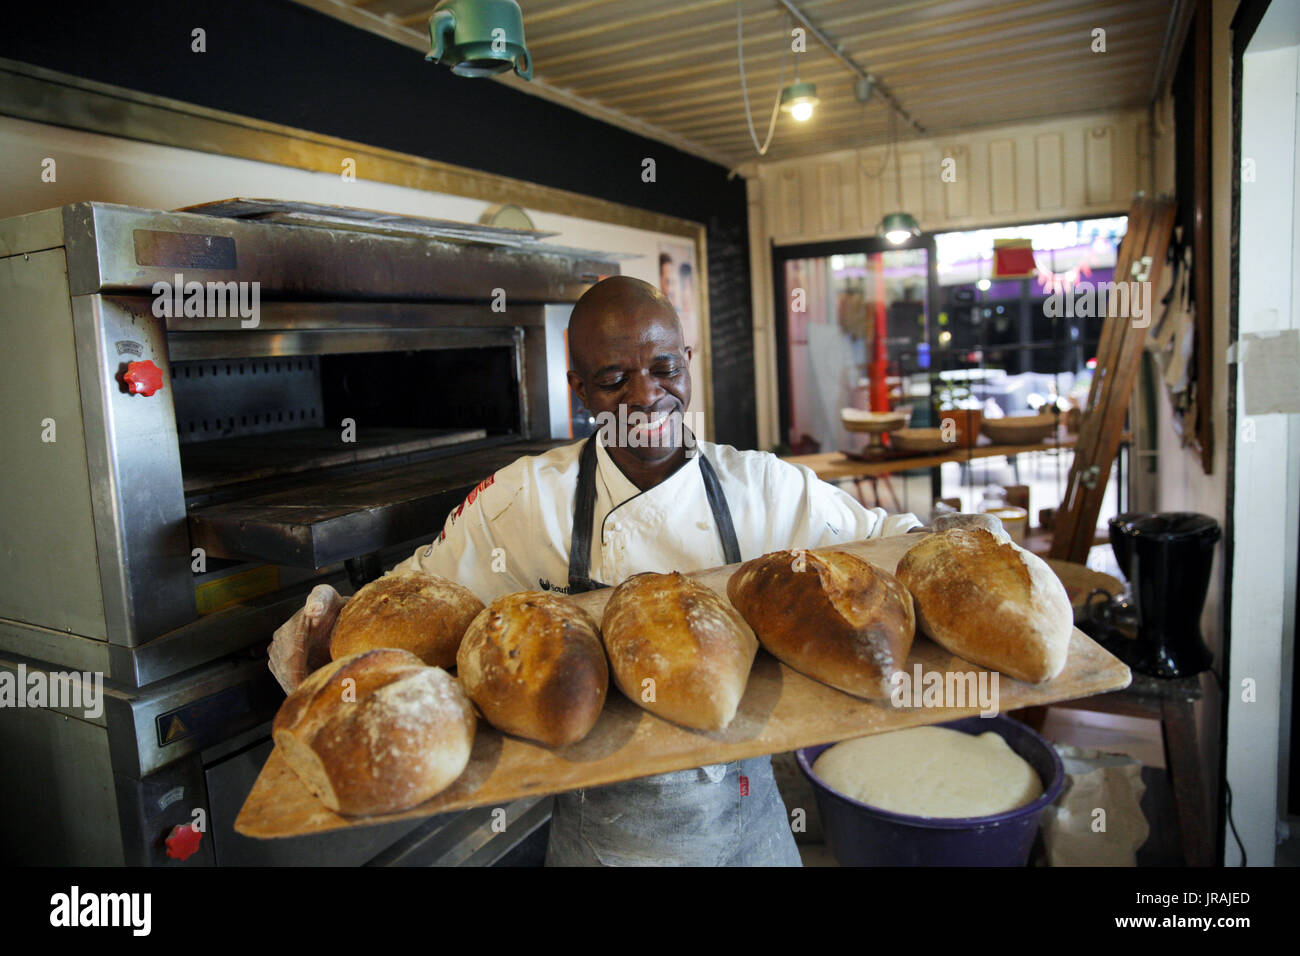 Baker holding tray of fresh bread Stock Photo